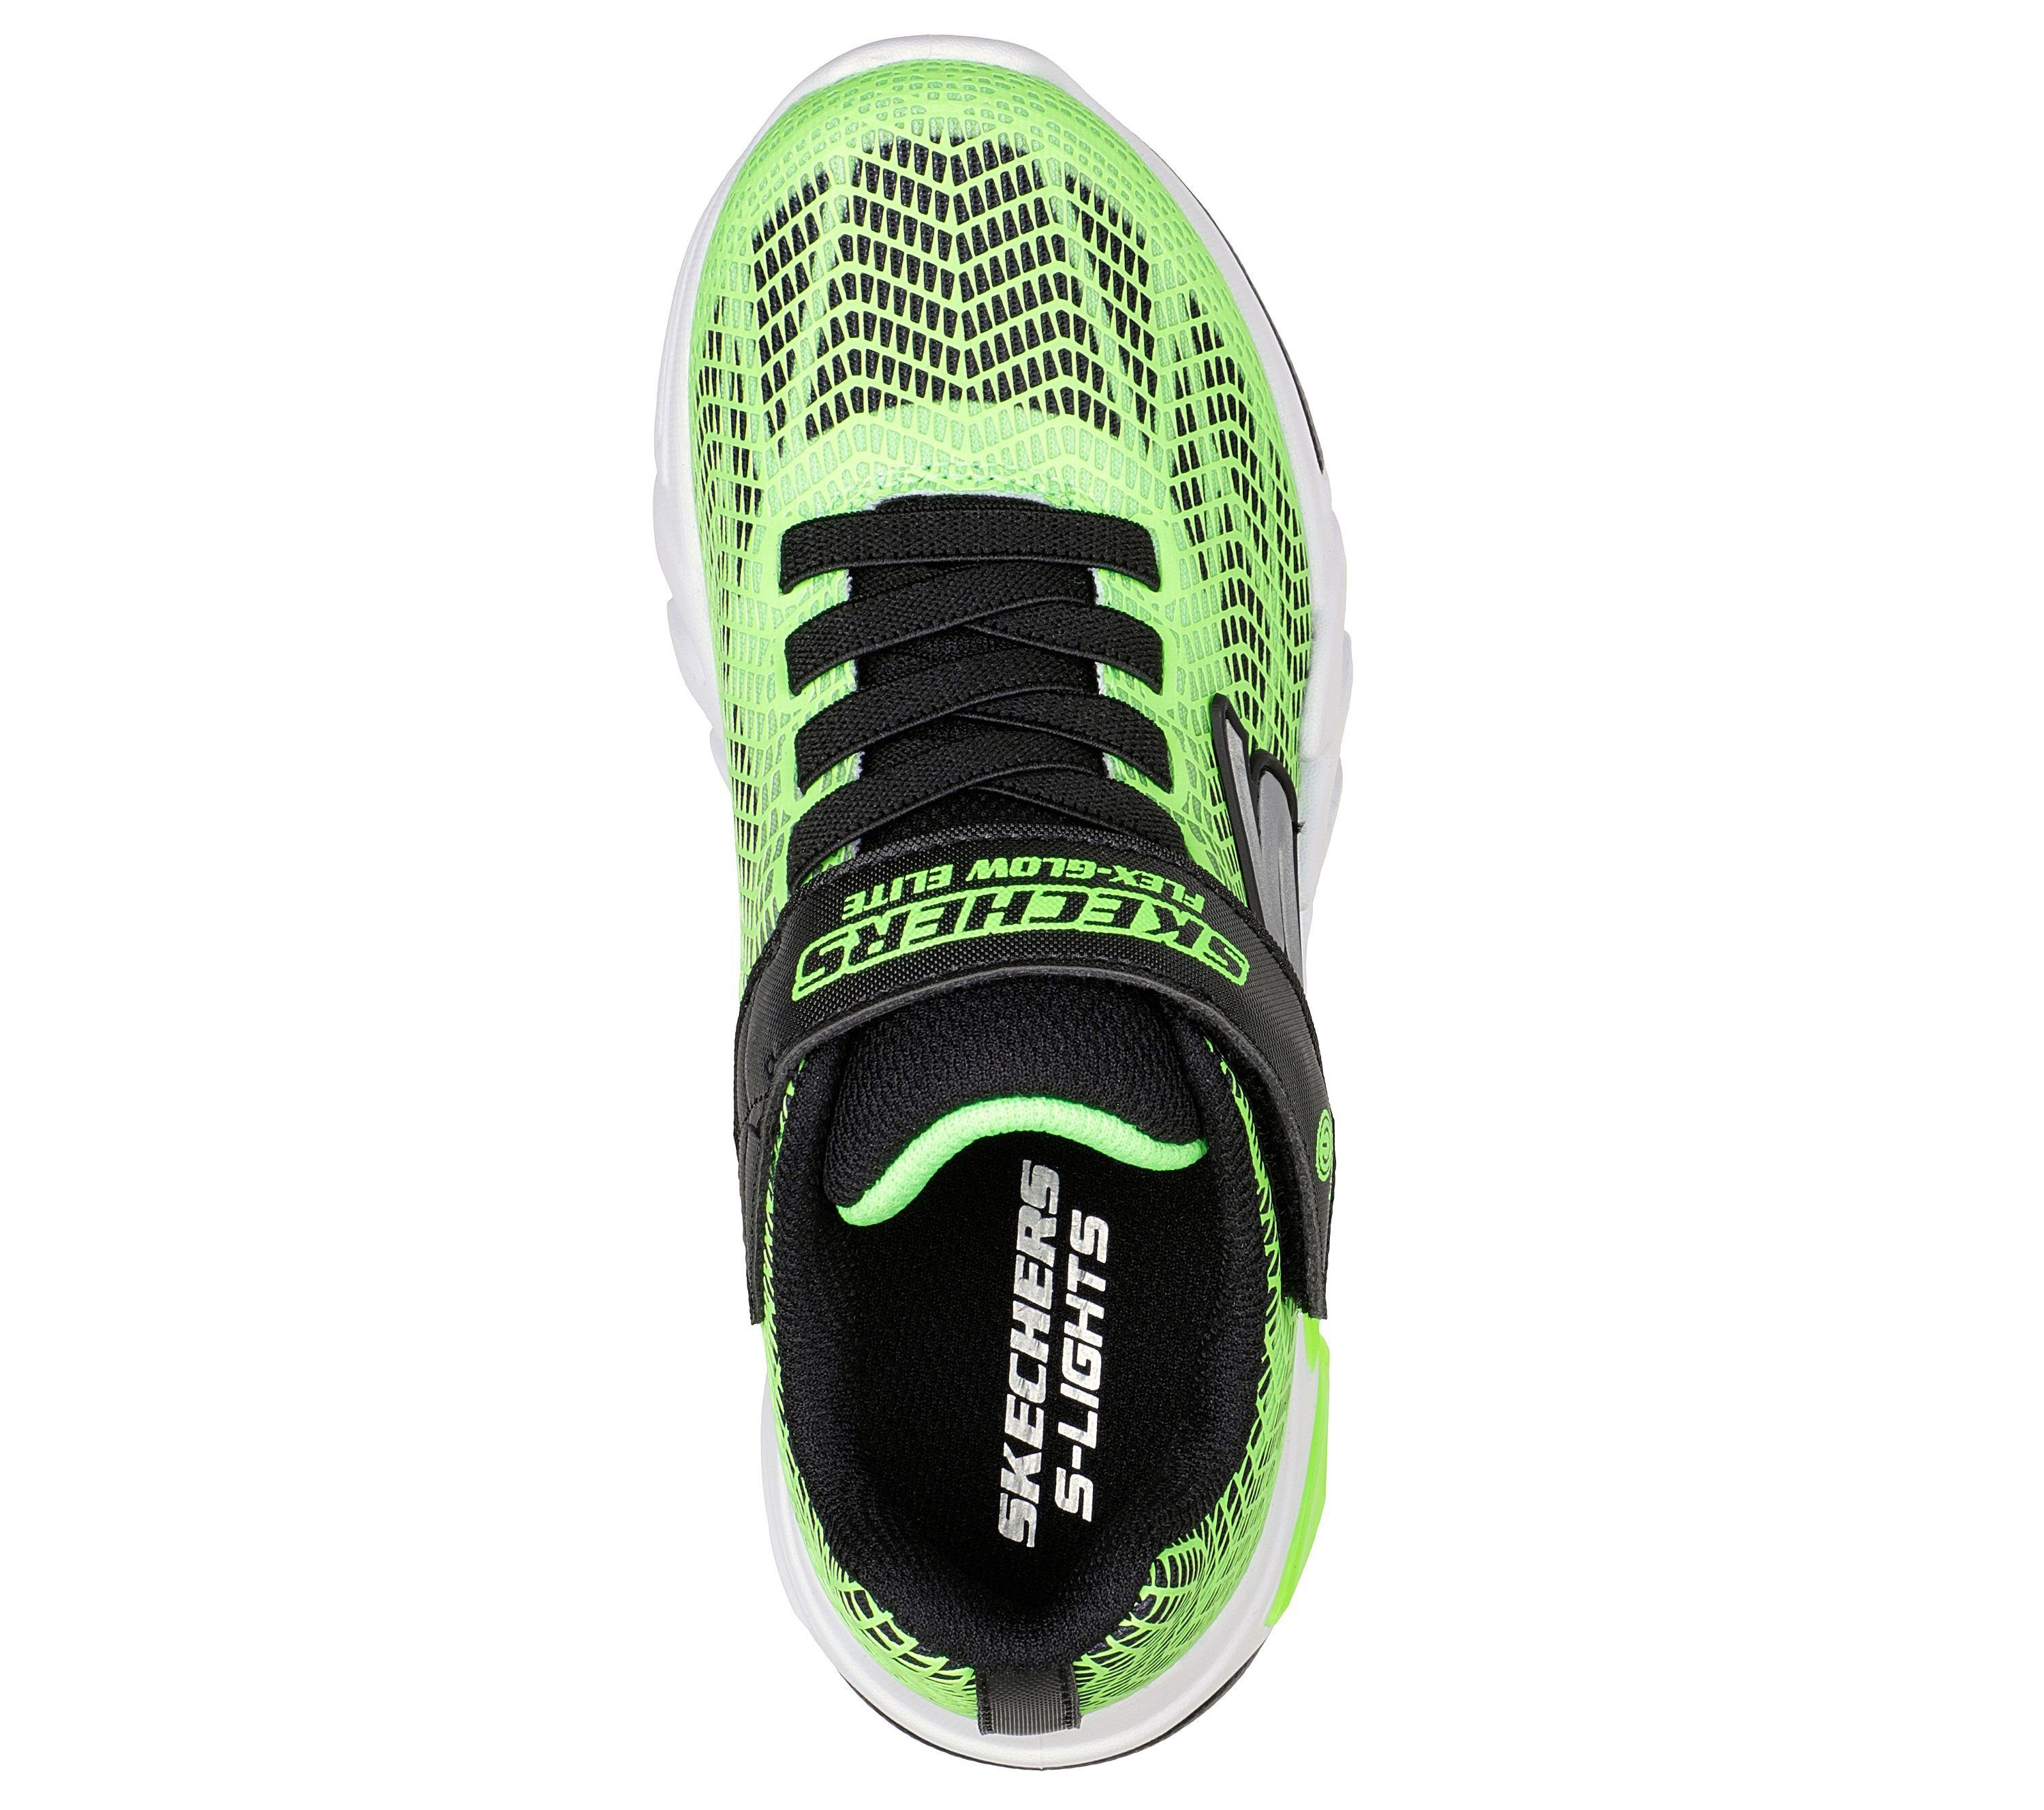 Schwarz (20203018) Skechers Sneaker / Lime Vorlo